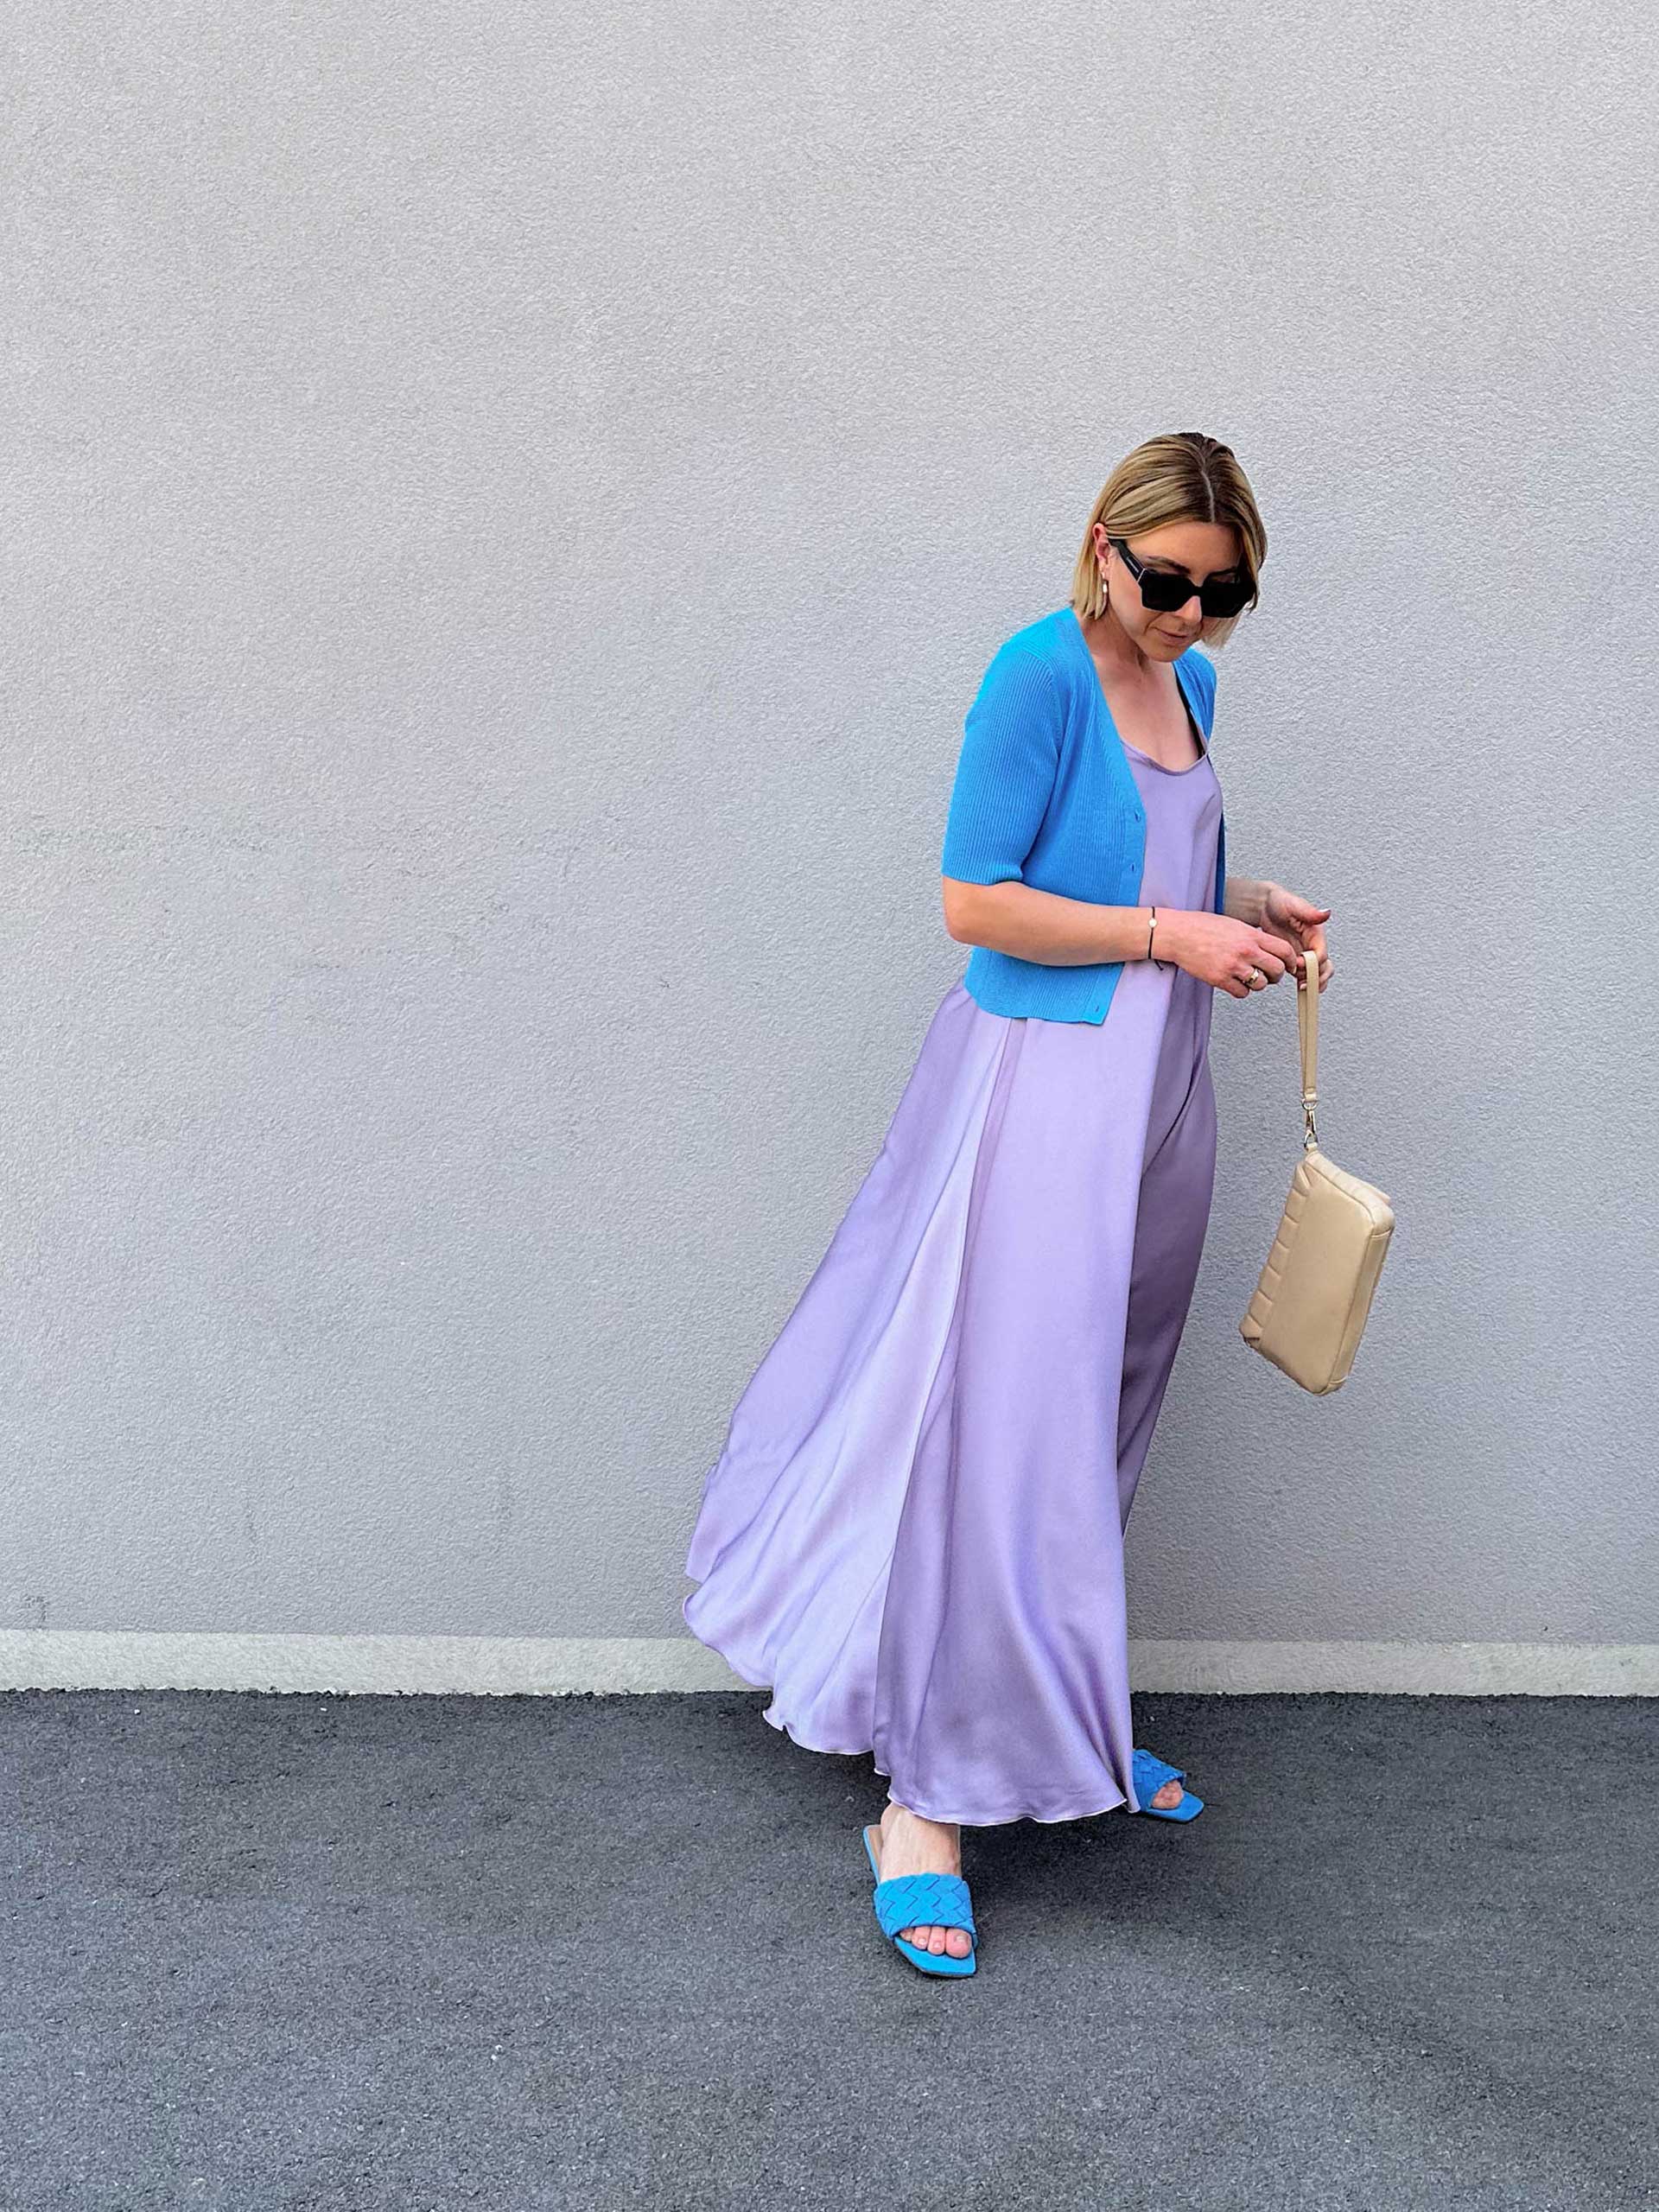 Hol dir am Modeblog die besten Styling-Tipps für die Sommertrends 2023 und finde heraus, was im Sommer modern ist. Entdecke die neuesten Outfits der Sommermode und strahle mit der Sonne um die Wette.